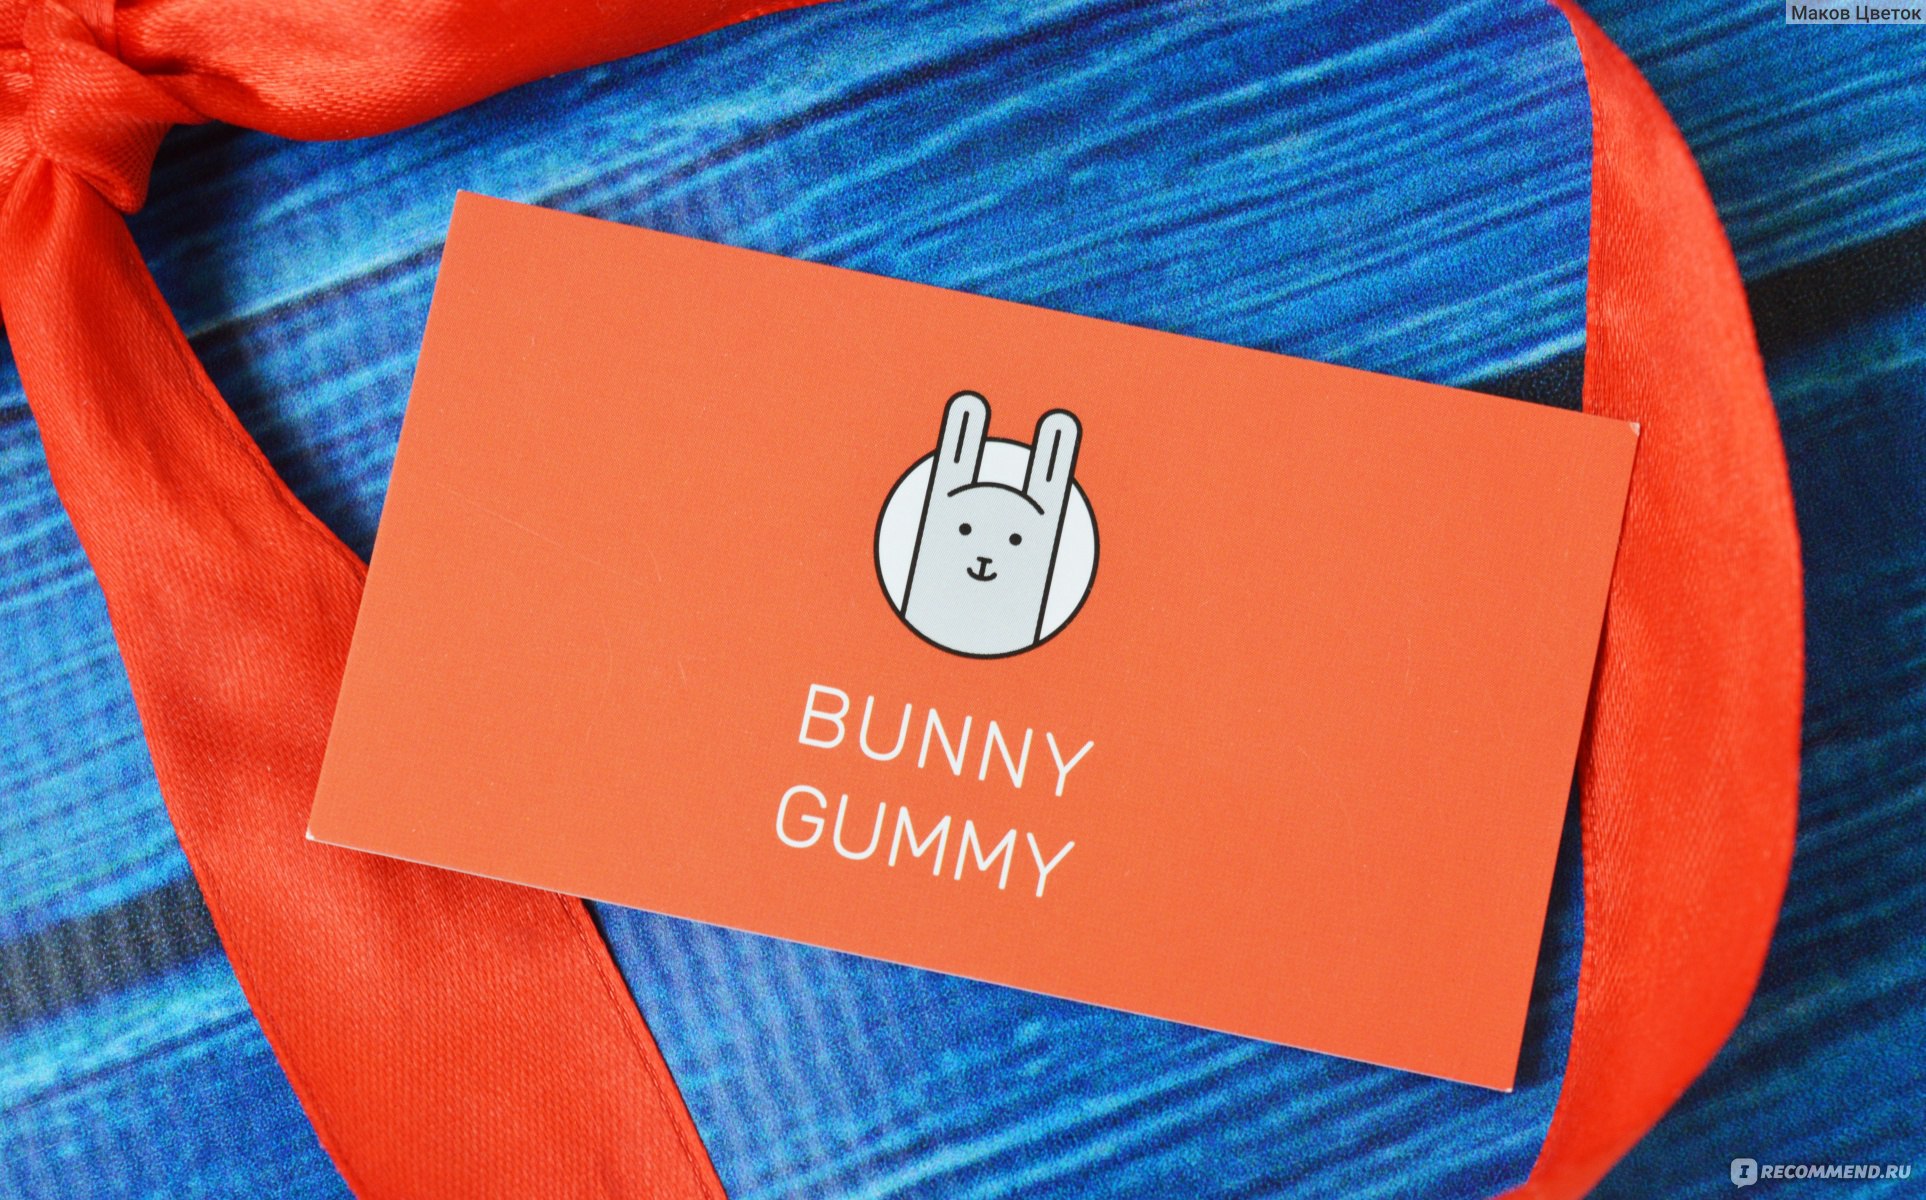 Поэтому, я рекомендую Bunny Gummy! 